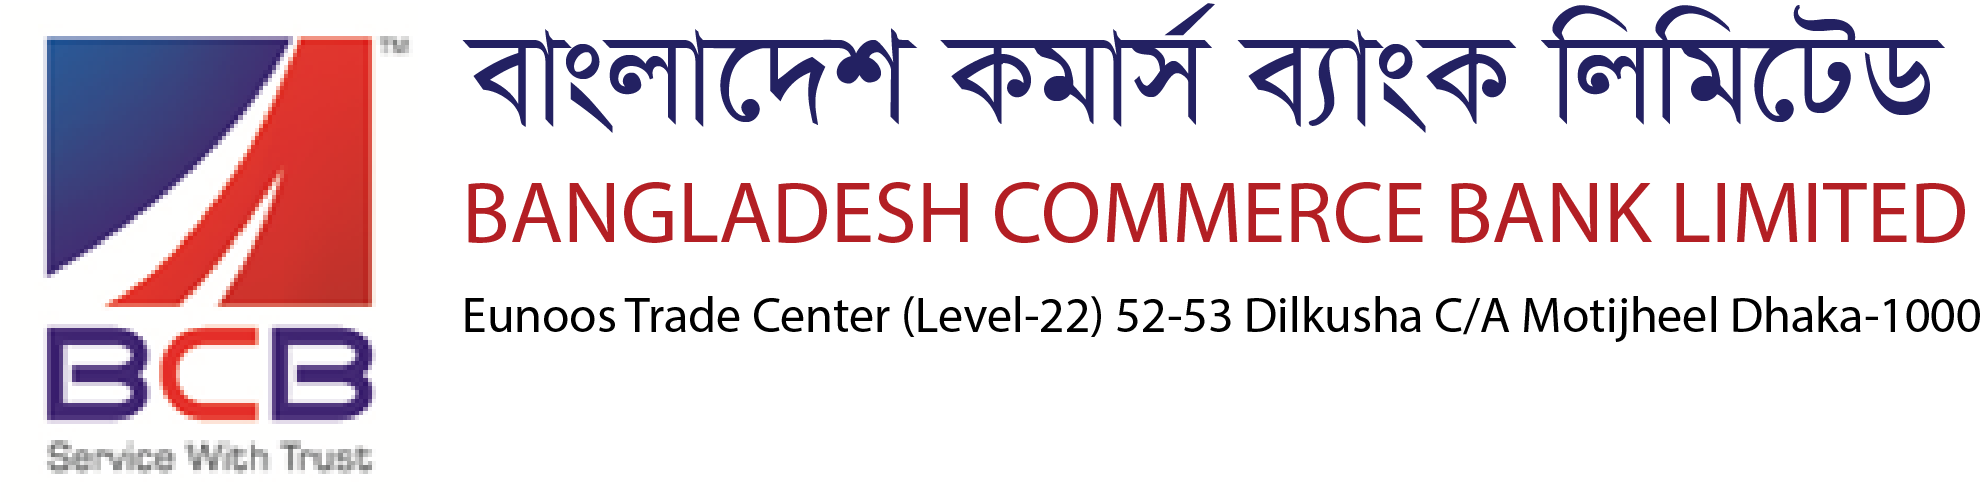 Bangladesh Commerce Bank Ltimited